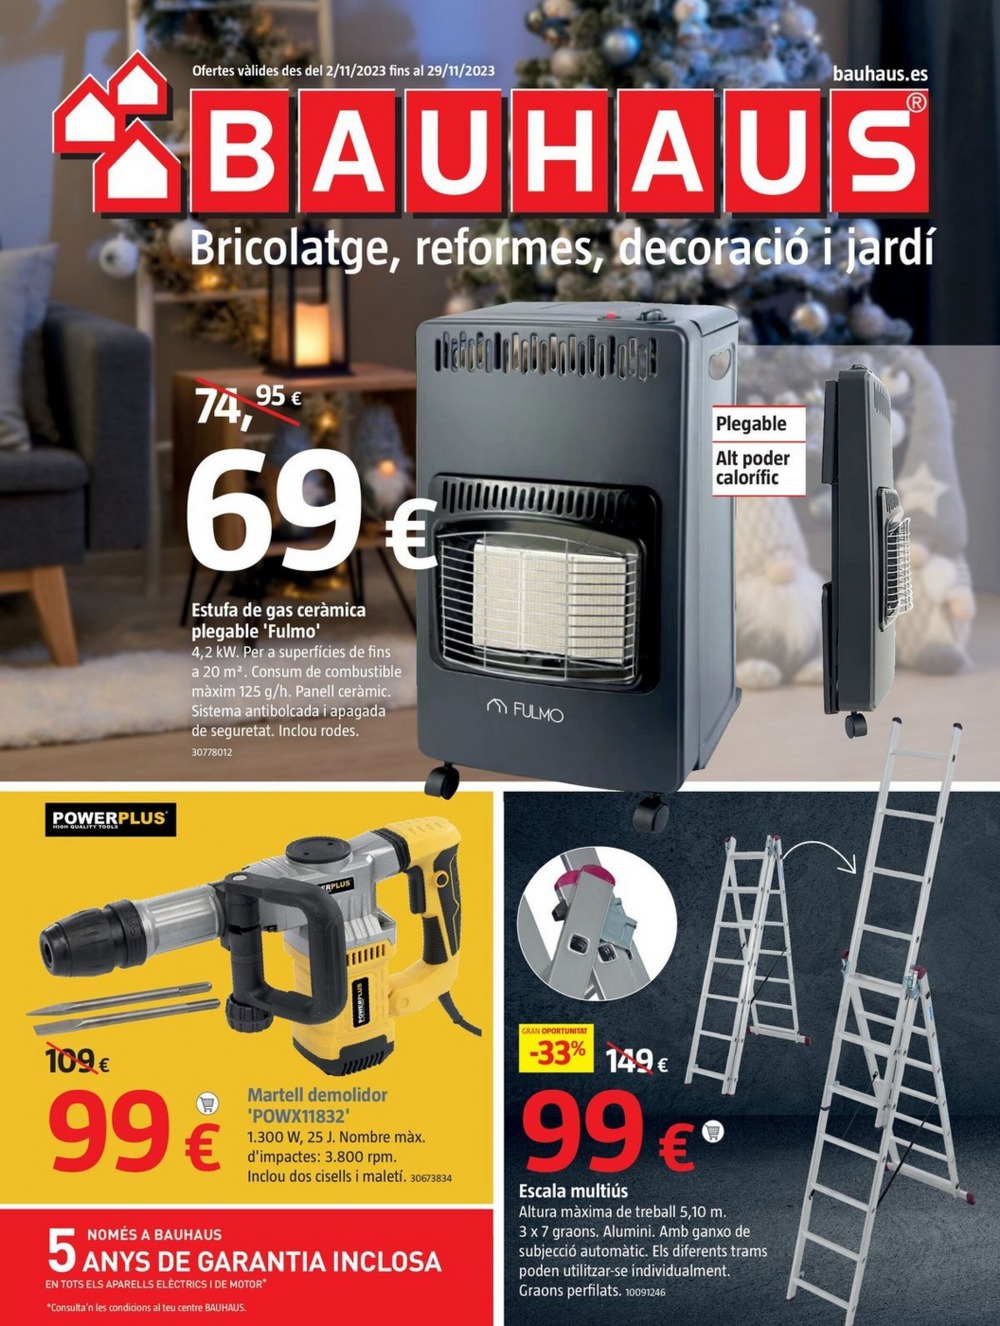 Bauhaus Black Friday Ofertas 2023 1 – bauhaus folleto 1